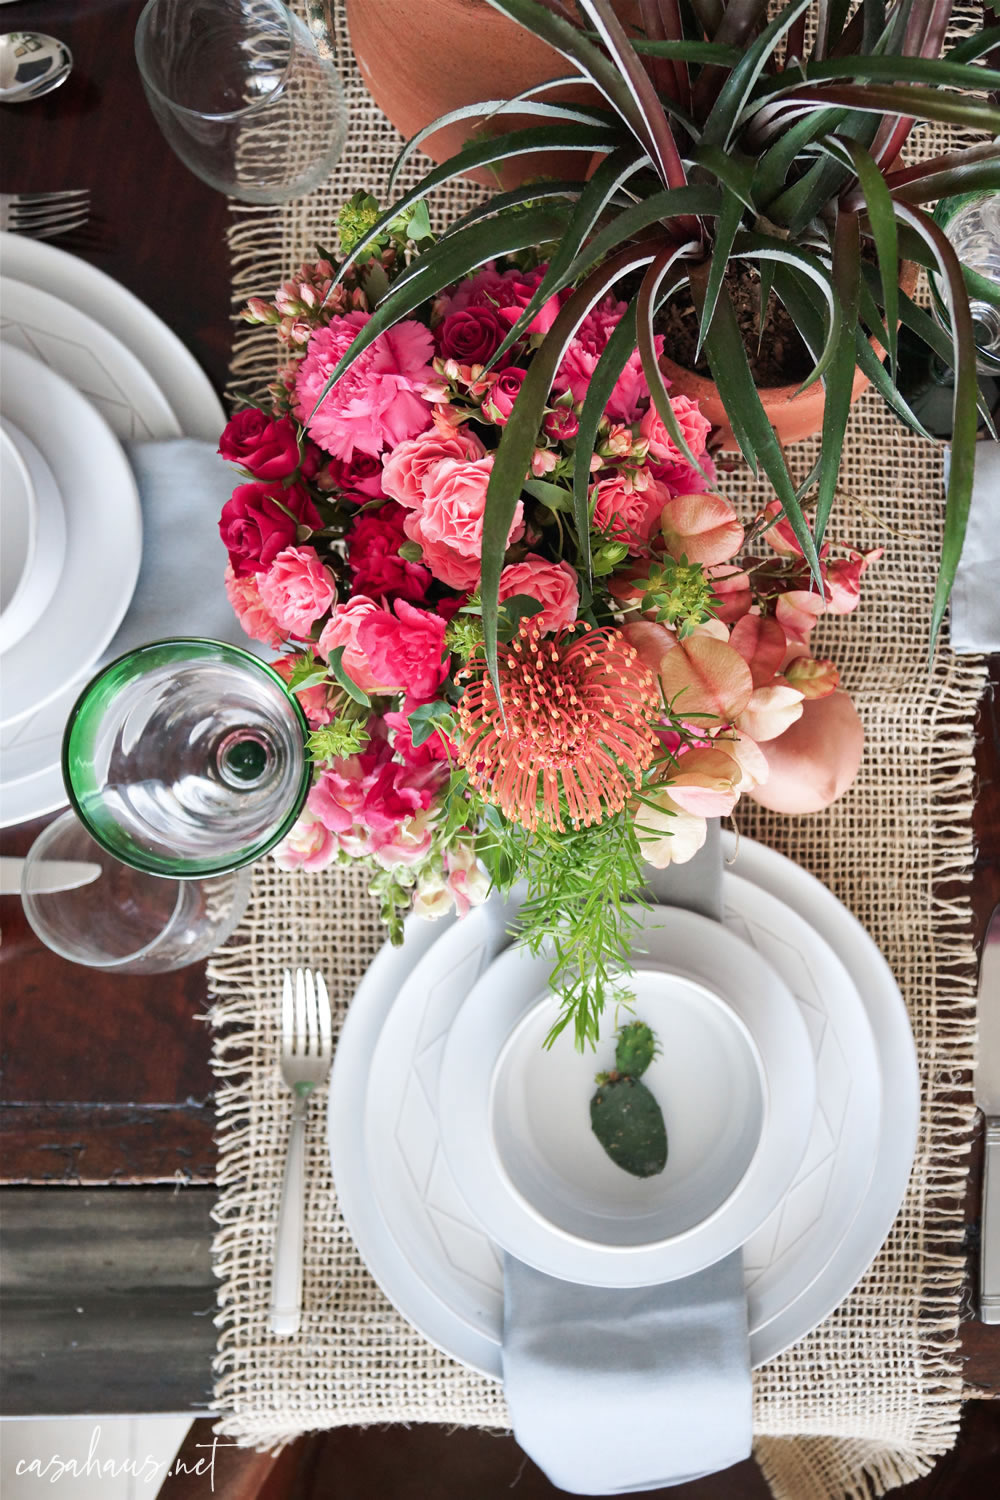 Platos puestos con nopalito, en mesa con cactus y flores rosas